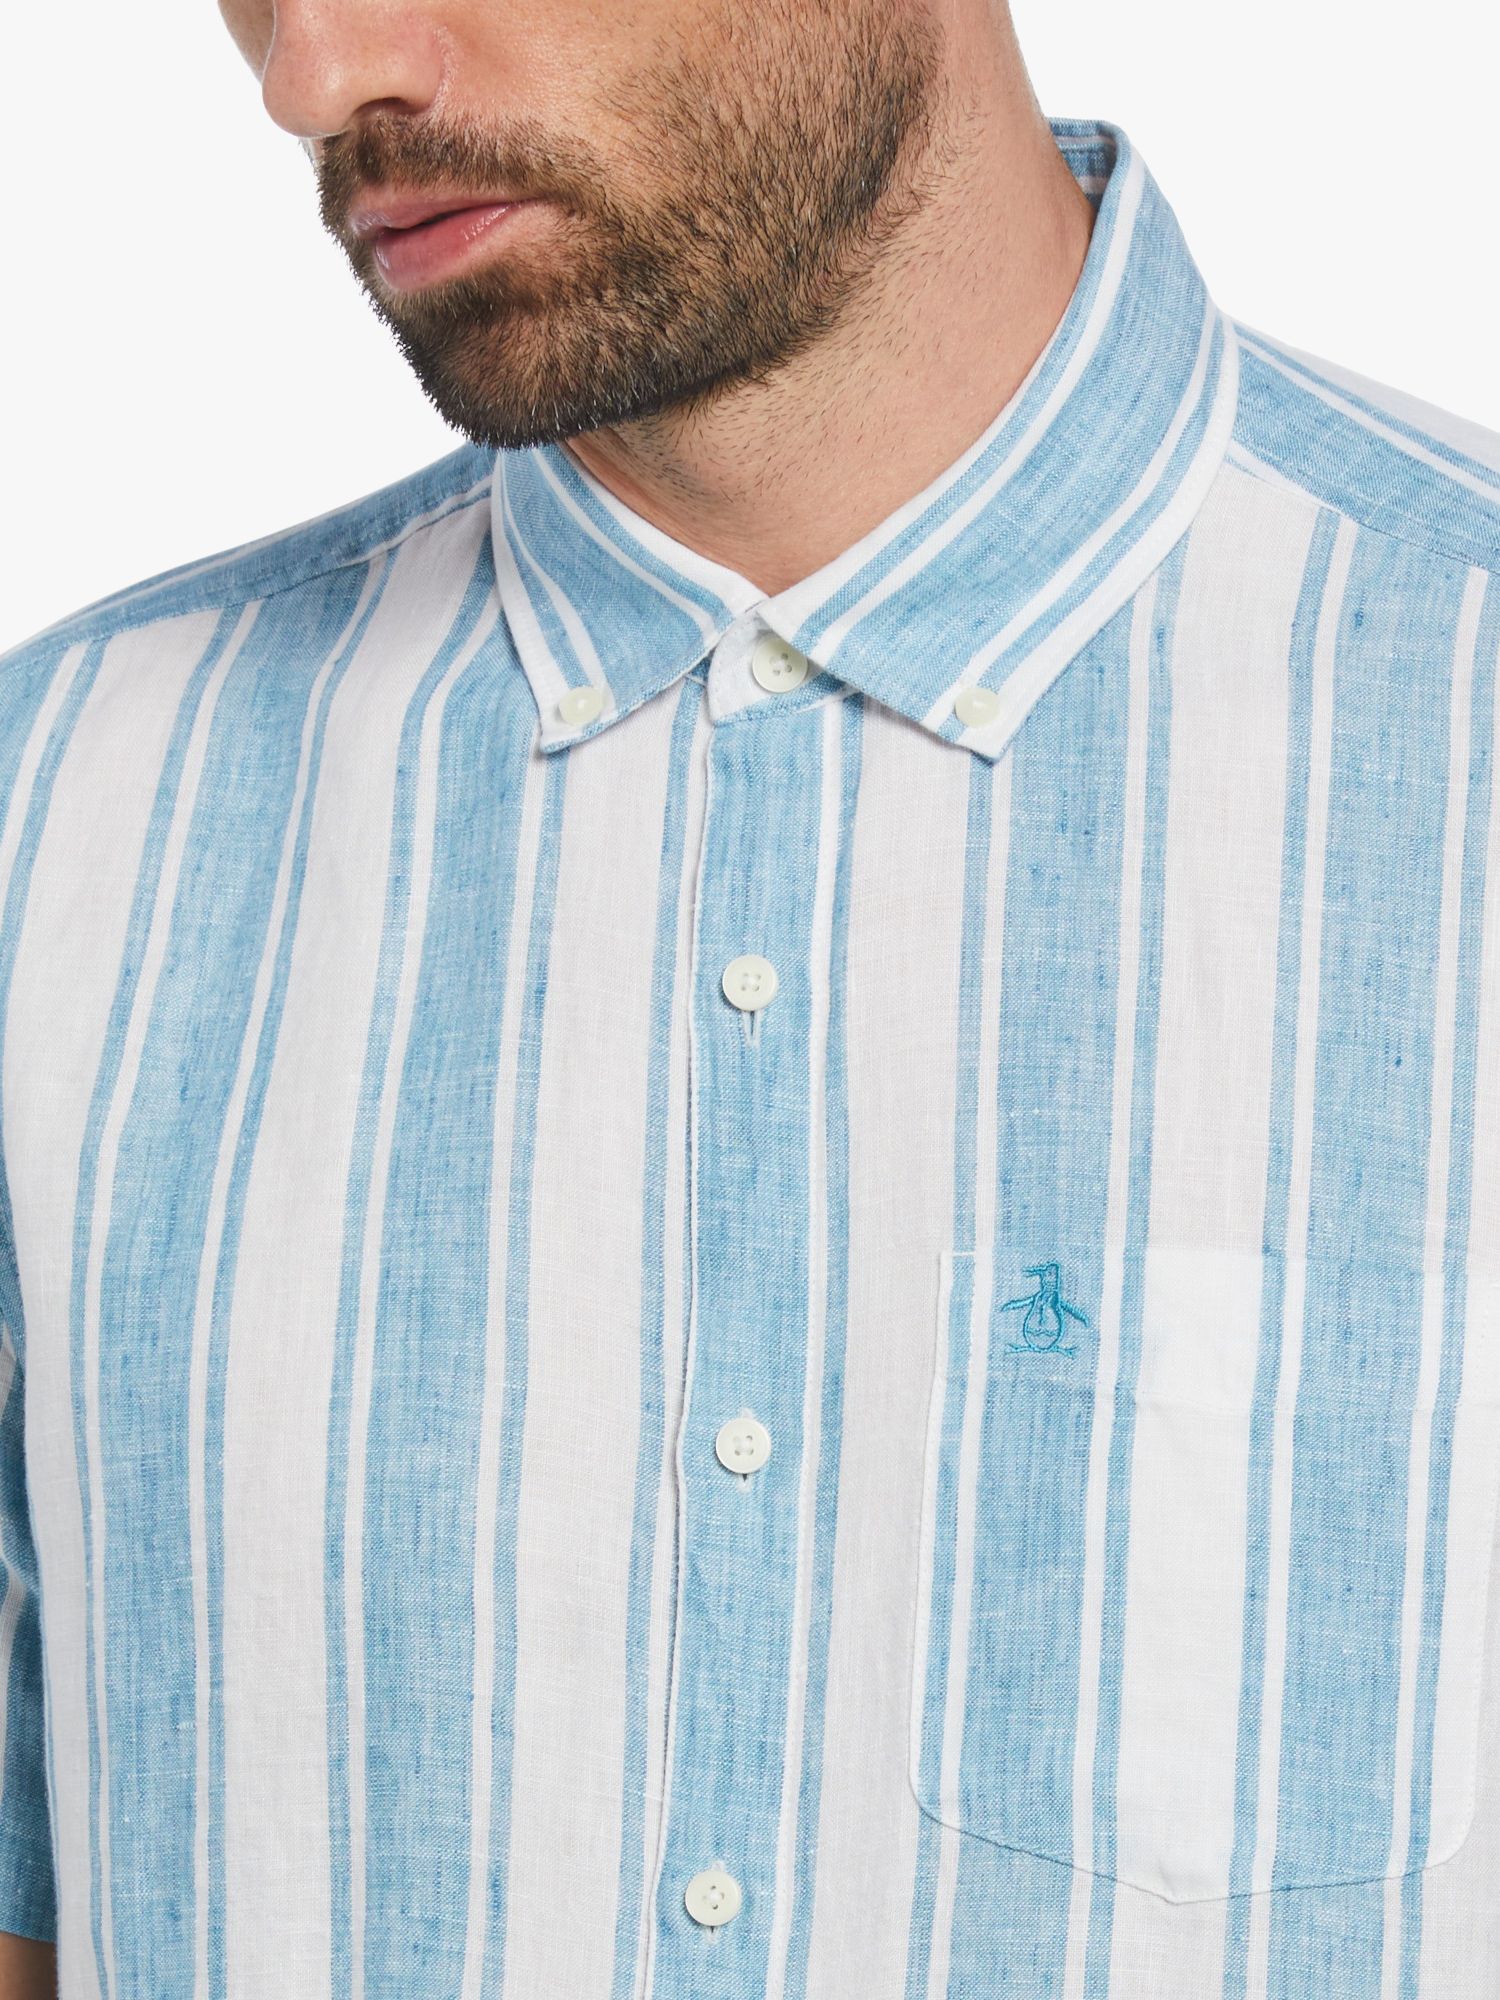 Original Penguin Vertical Stripe Linen Shirt, Blue Moon, XL